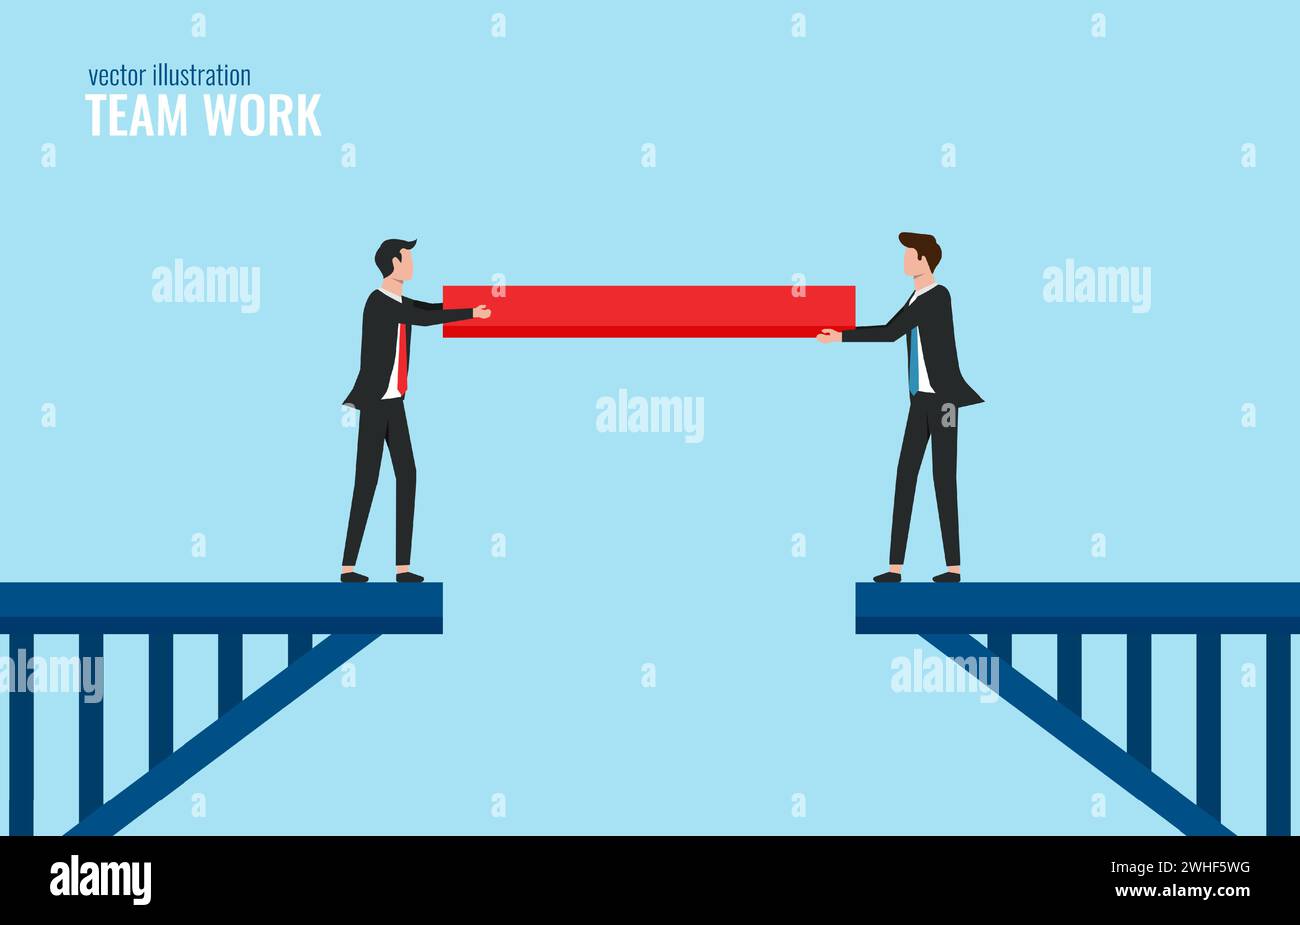 Concept de travail d'équipe, hommes d'affaires reliant le pont avec l'illustration vectorielle de pièce manquante Illustration de Vecteur